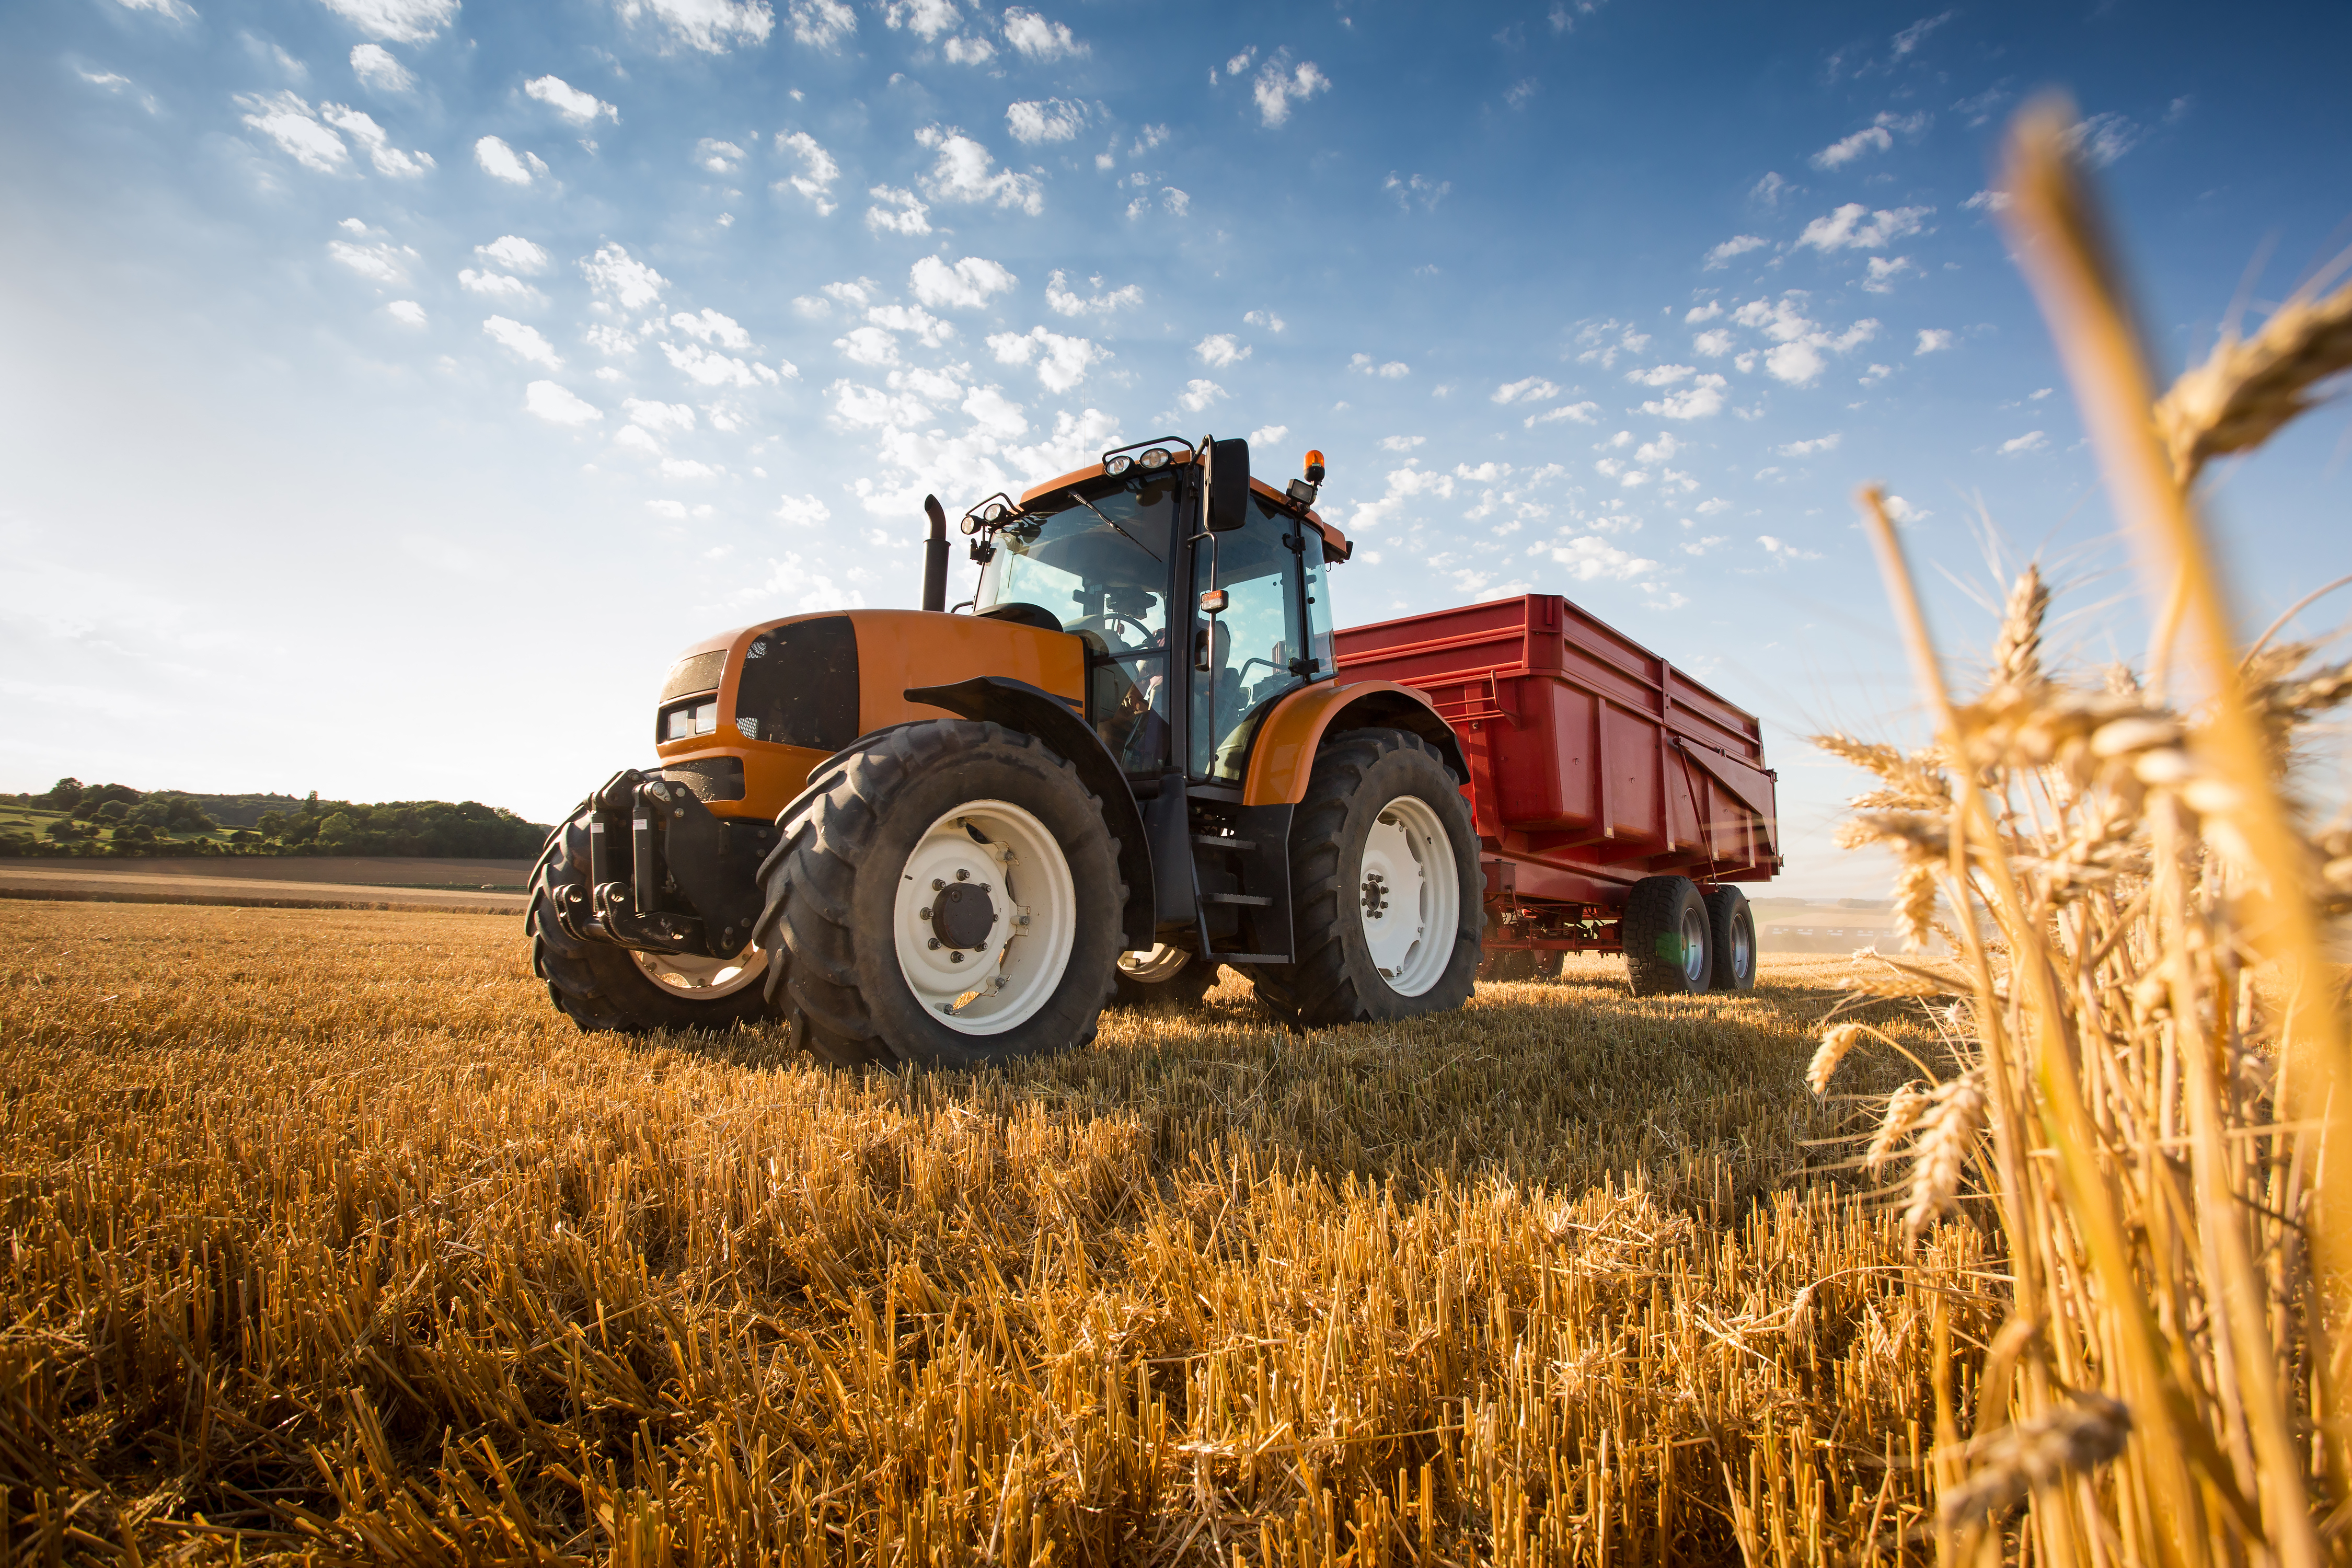 Leilões online são alternativa para adquirir máquinas e equipamentos agrícolas